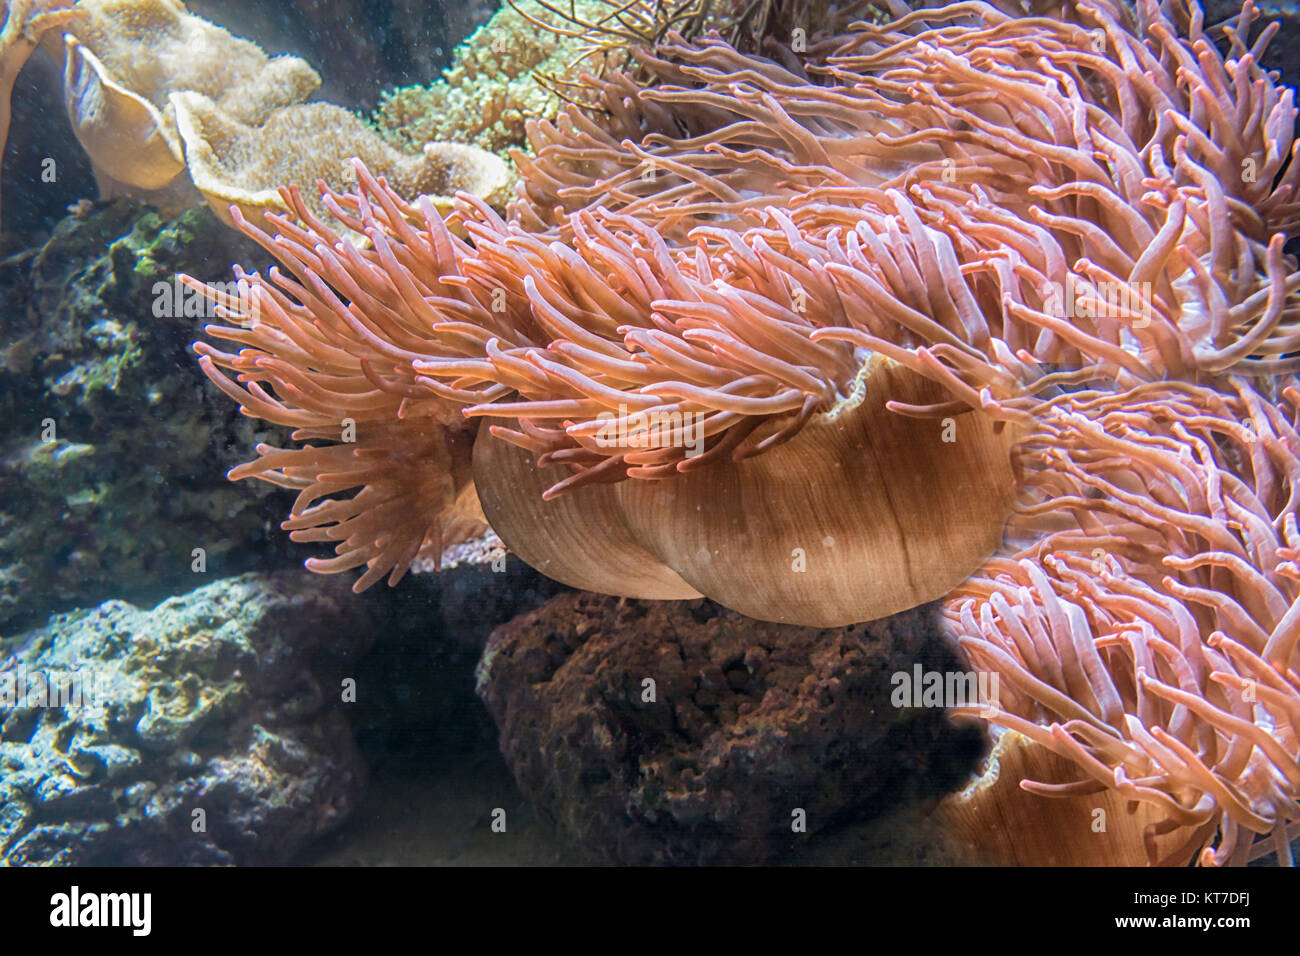 Schöne rosa Seeanemone mit vielen Tentakeln zum fang von Plankton, Fischen, Krebsen oder Schnecken. Unterwasseraufnahme. Stock Photo